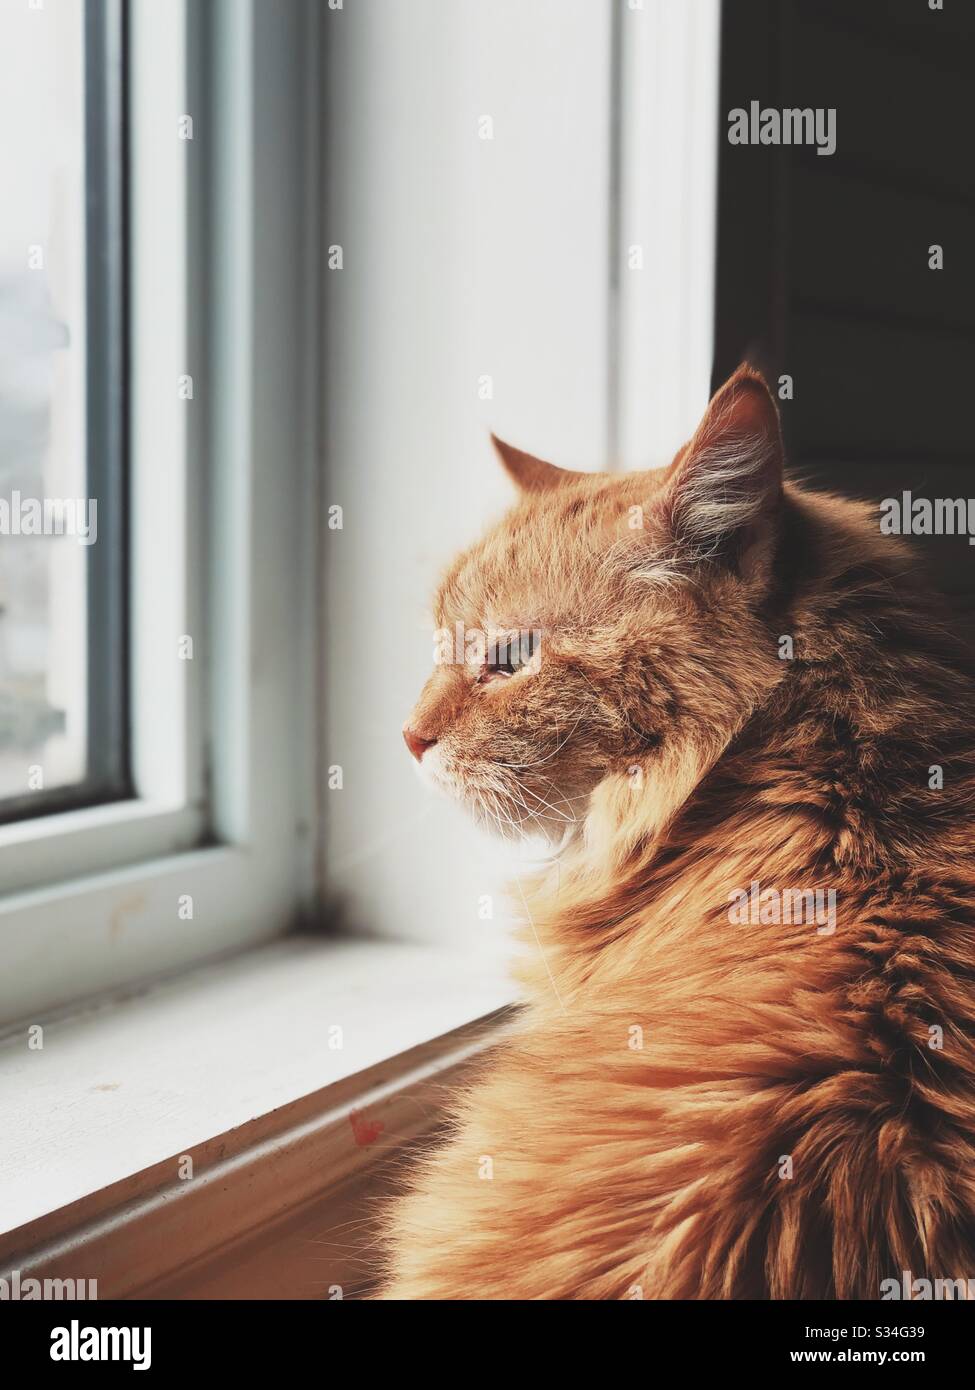 Gato senior mirando por la ventana Foto de stock